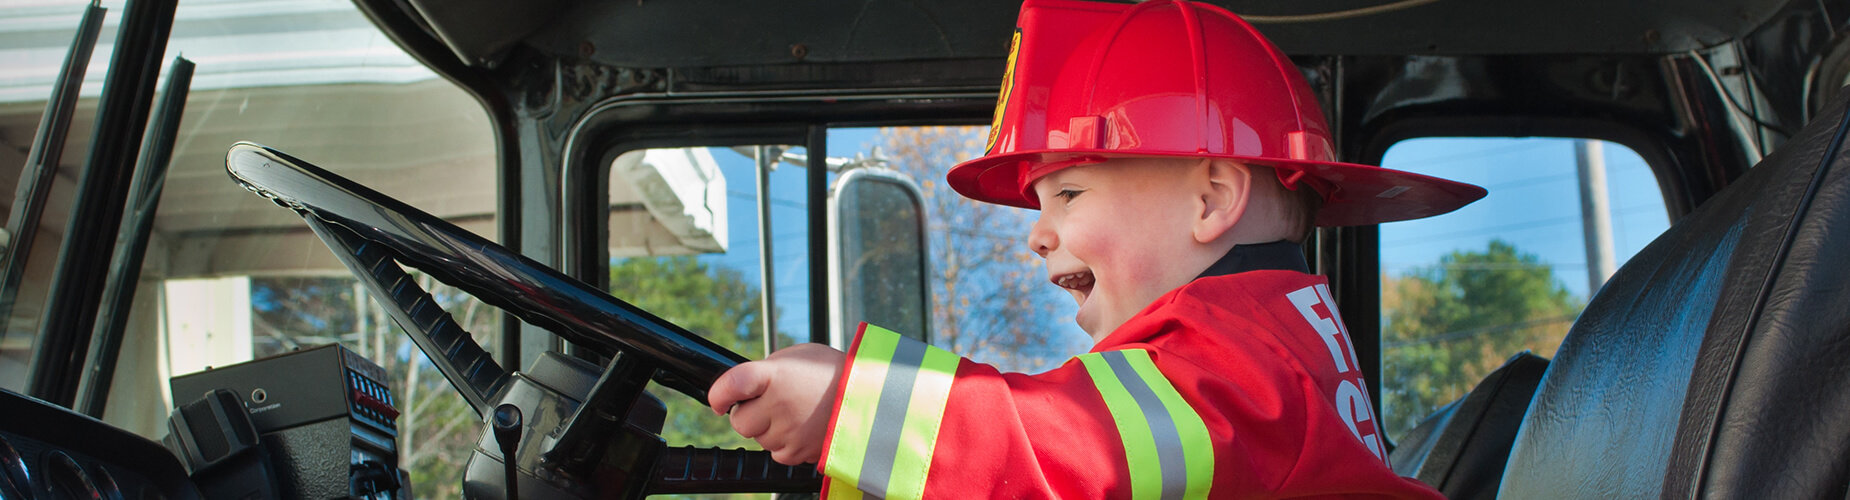 Feuerwehrförderung - Kind im Feuerwehrwagen 